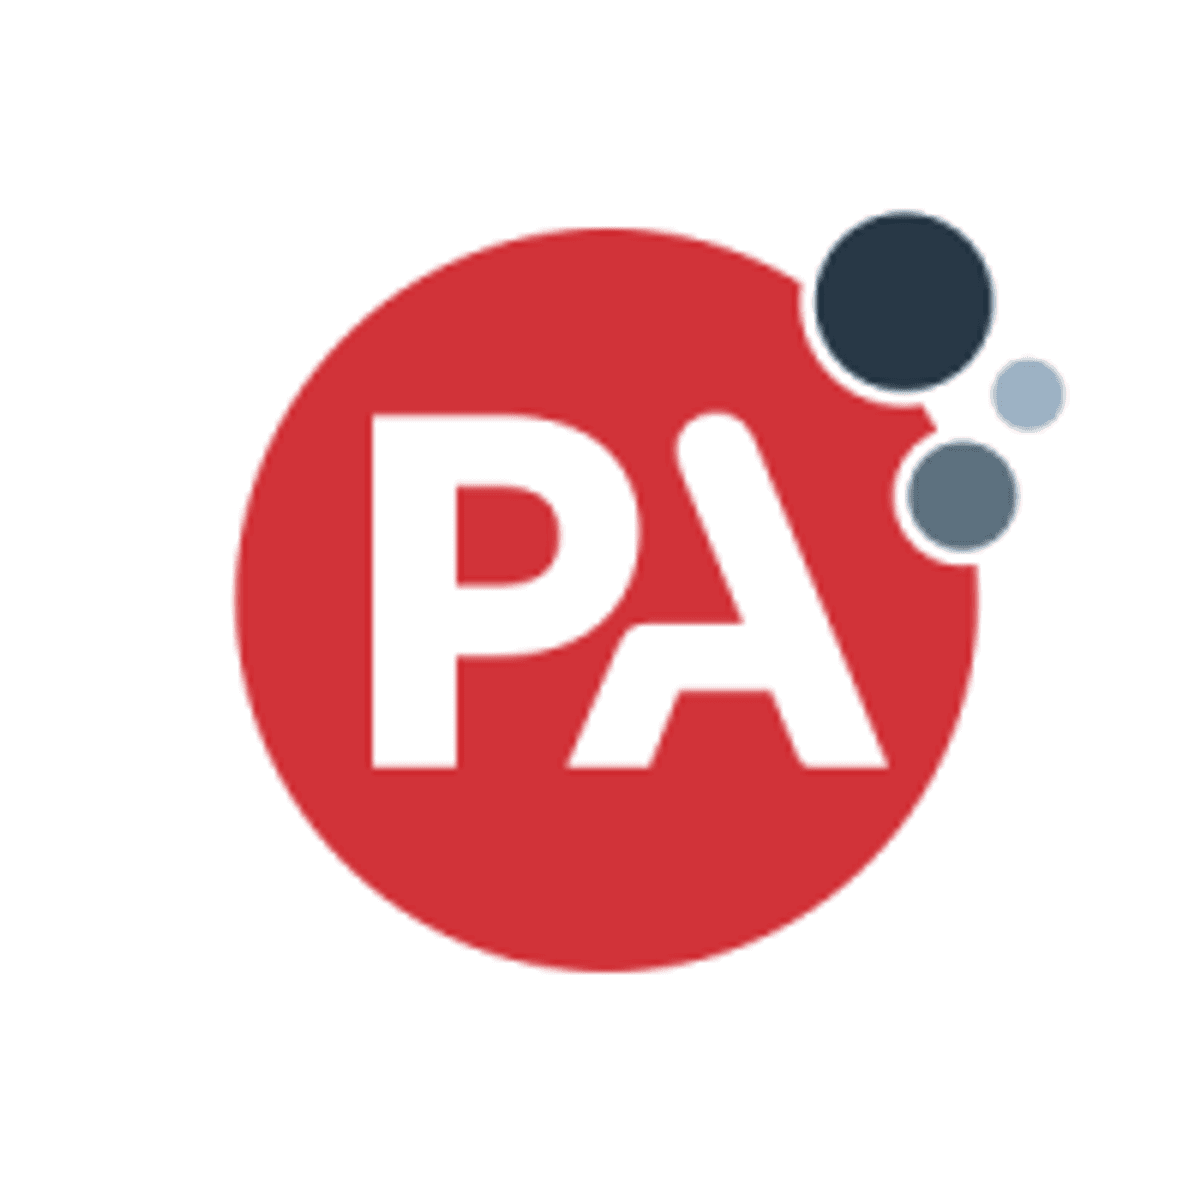 PA Consulting verwelkomt veertienhonderd nieuwe medewerkers image